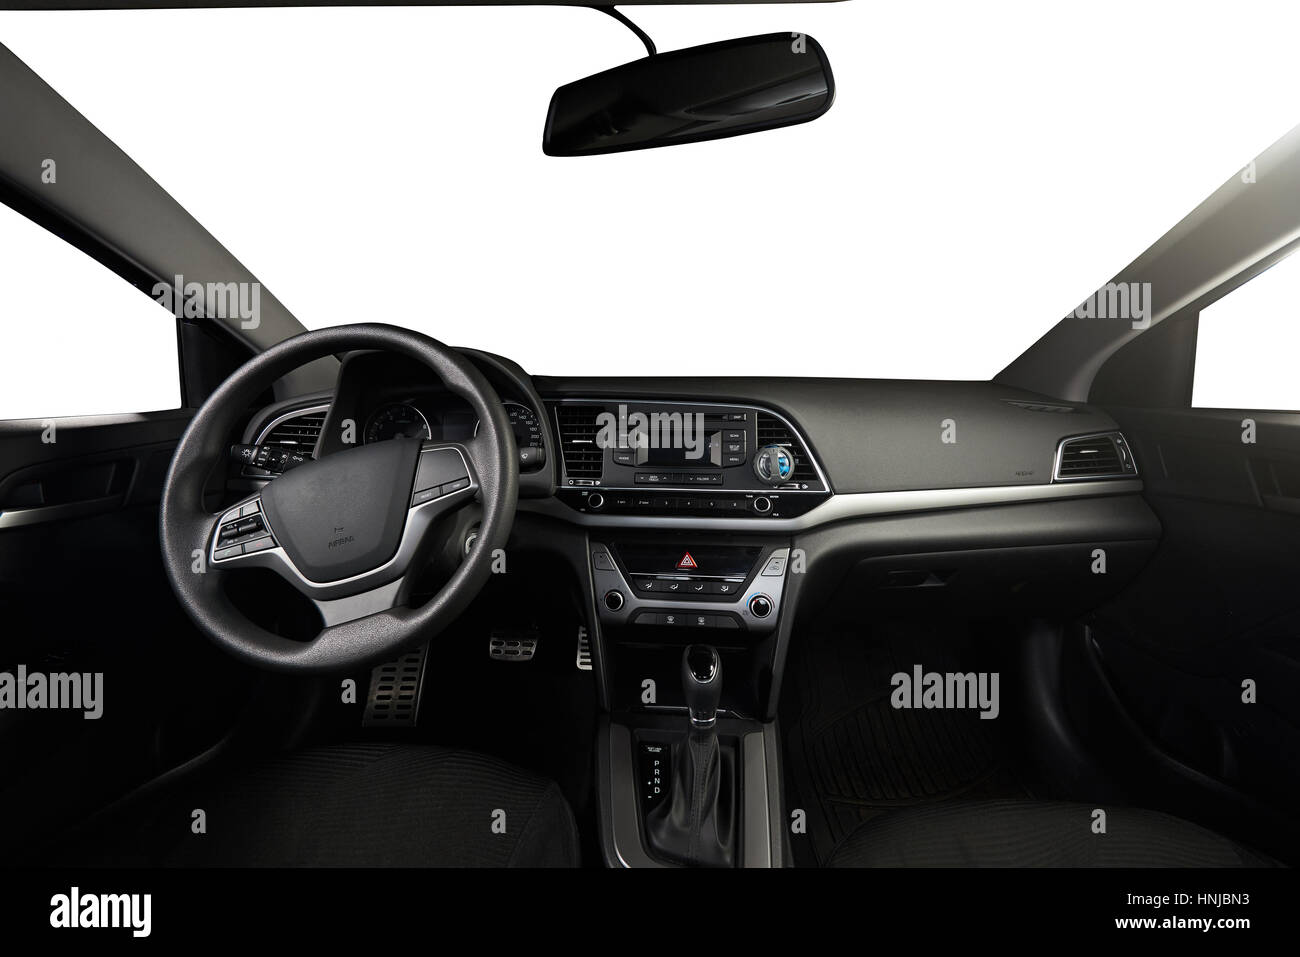 Modernes Lenkrad mit Multifunktionstasten für die schnelle Steuerung,  Nahaufnahme Interieur Modern Black Innenraum komfortable Auto  Stockfotografie - Alamy